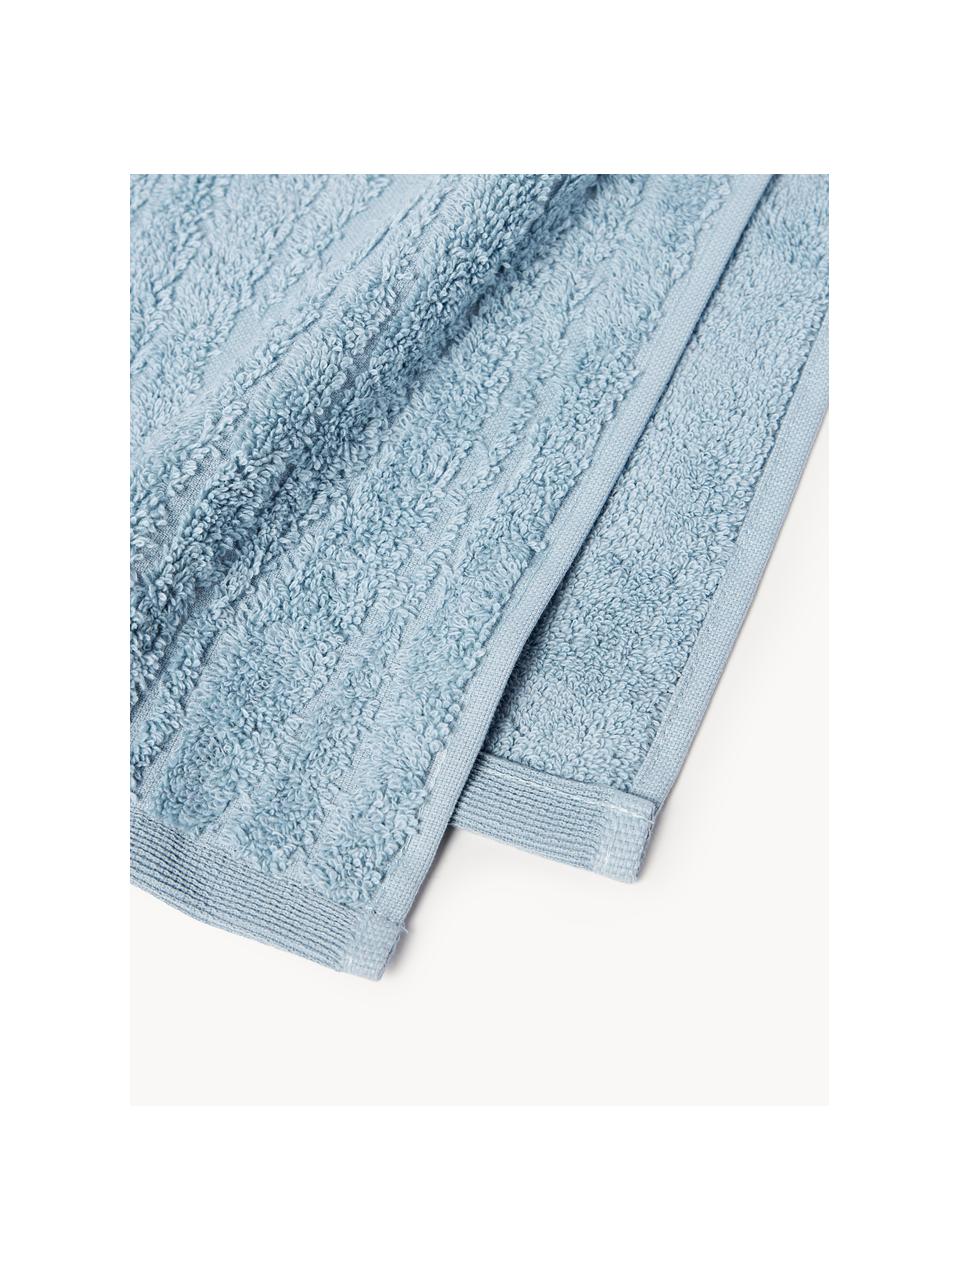 Komplet ręczników Audrina, różne rozmiary, Szaroniebieski, 4 elem. (ręcznik do rąk & ręcznik kąpielowy)